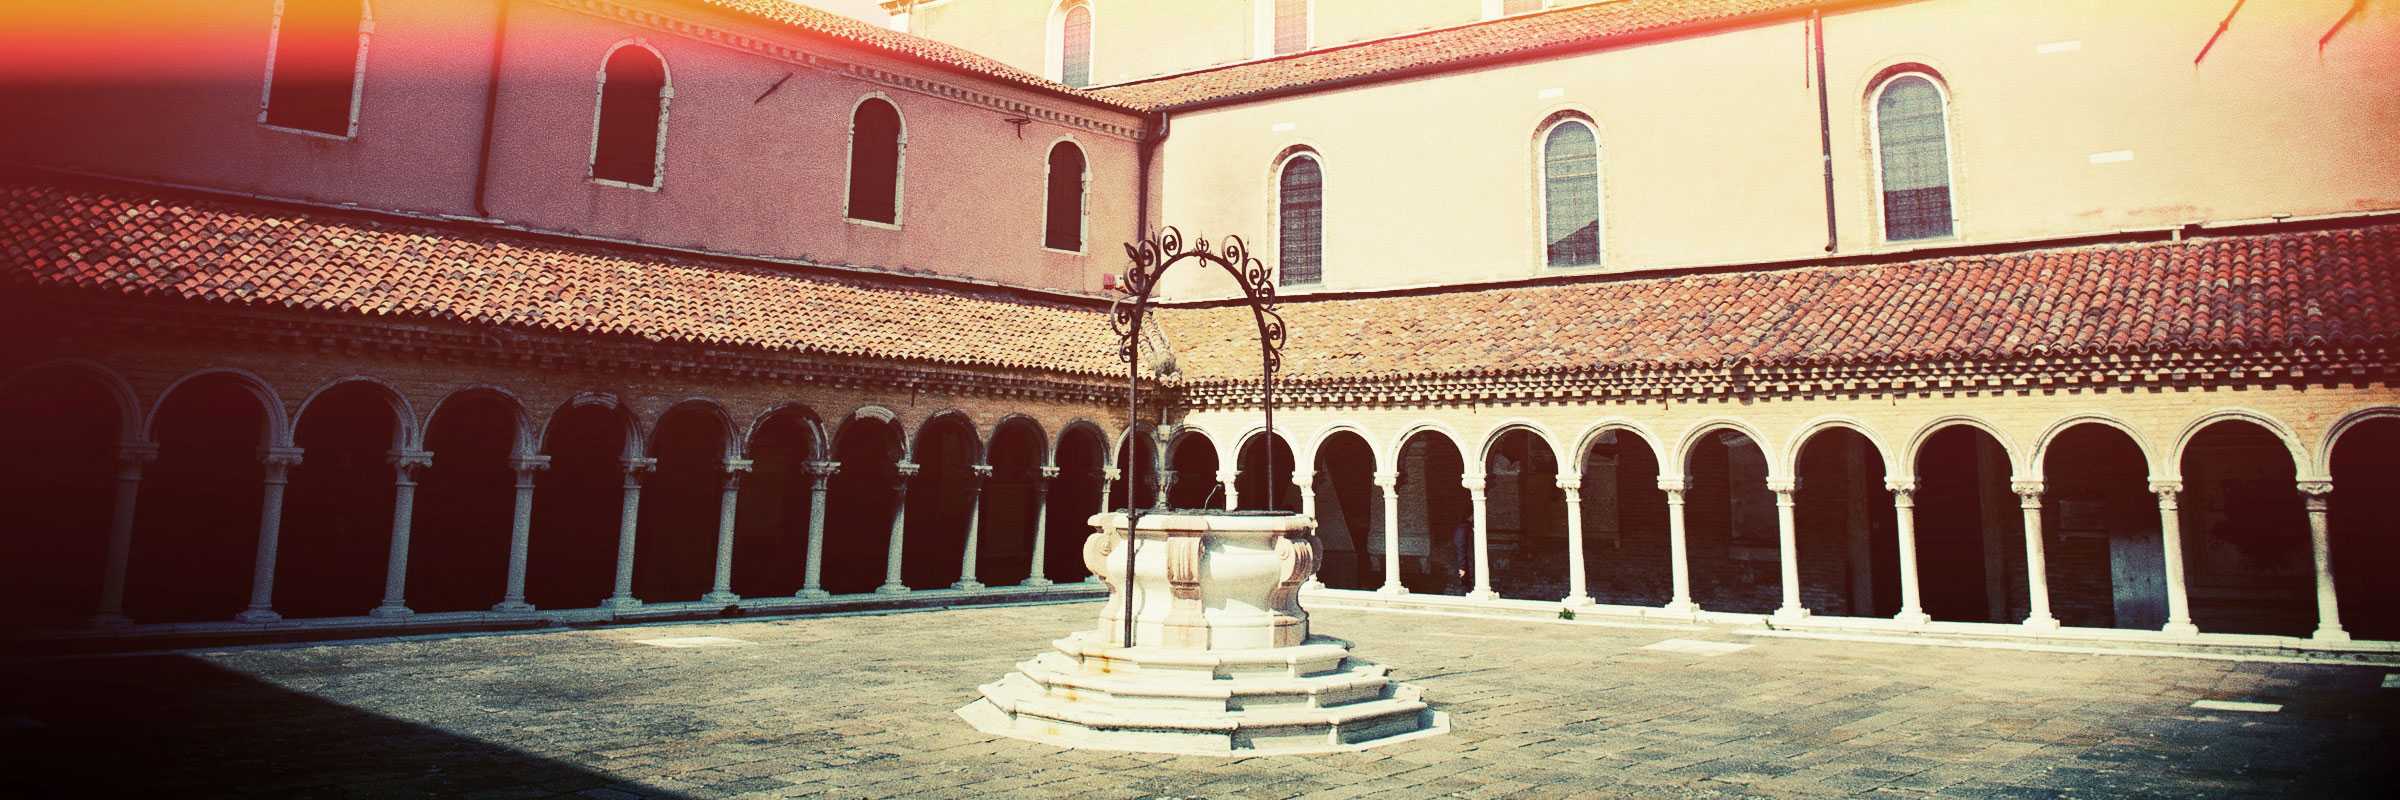 Particolare del chiostro grande del convento di San Michele in Isola — (Archivio Venipedia/Bazzmann)